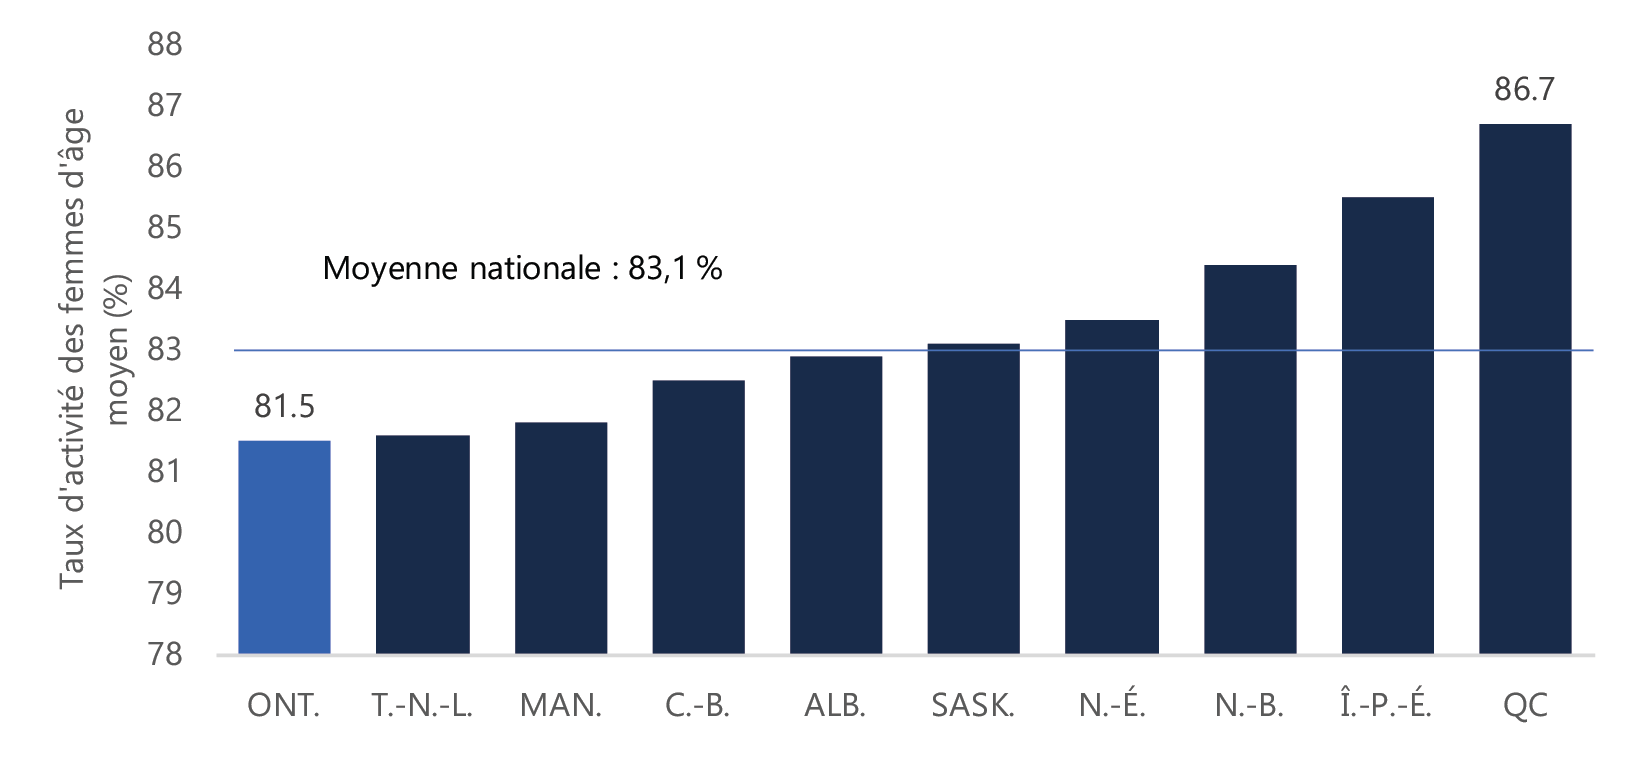 Le taux de participation chez les femmes du principal groupe d’âge actif en Ontario est le plus faible au Canada